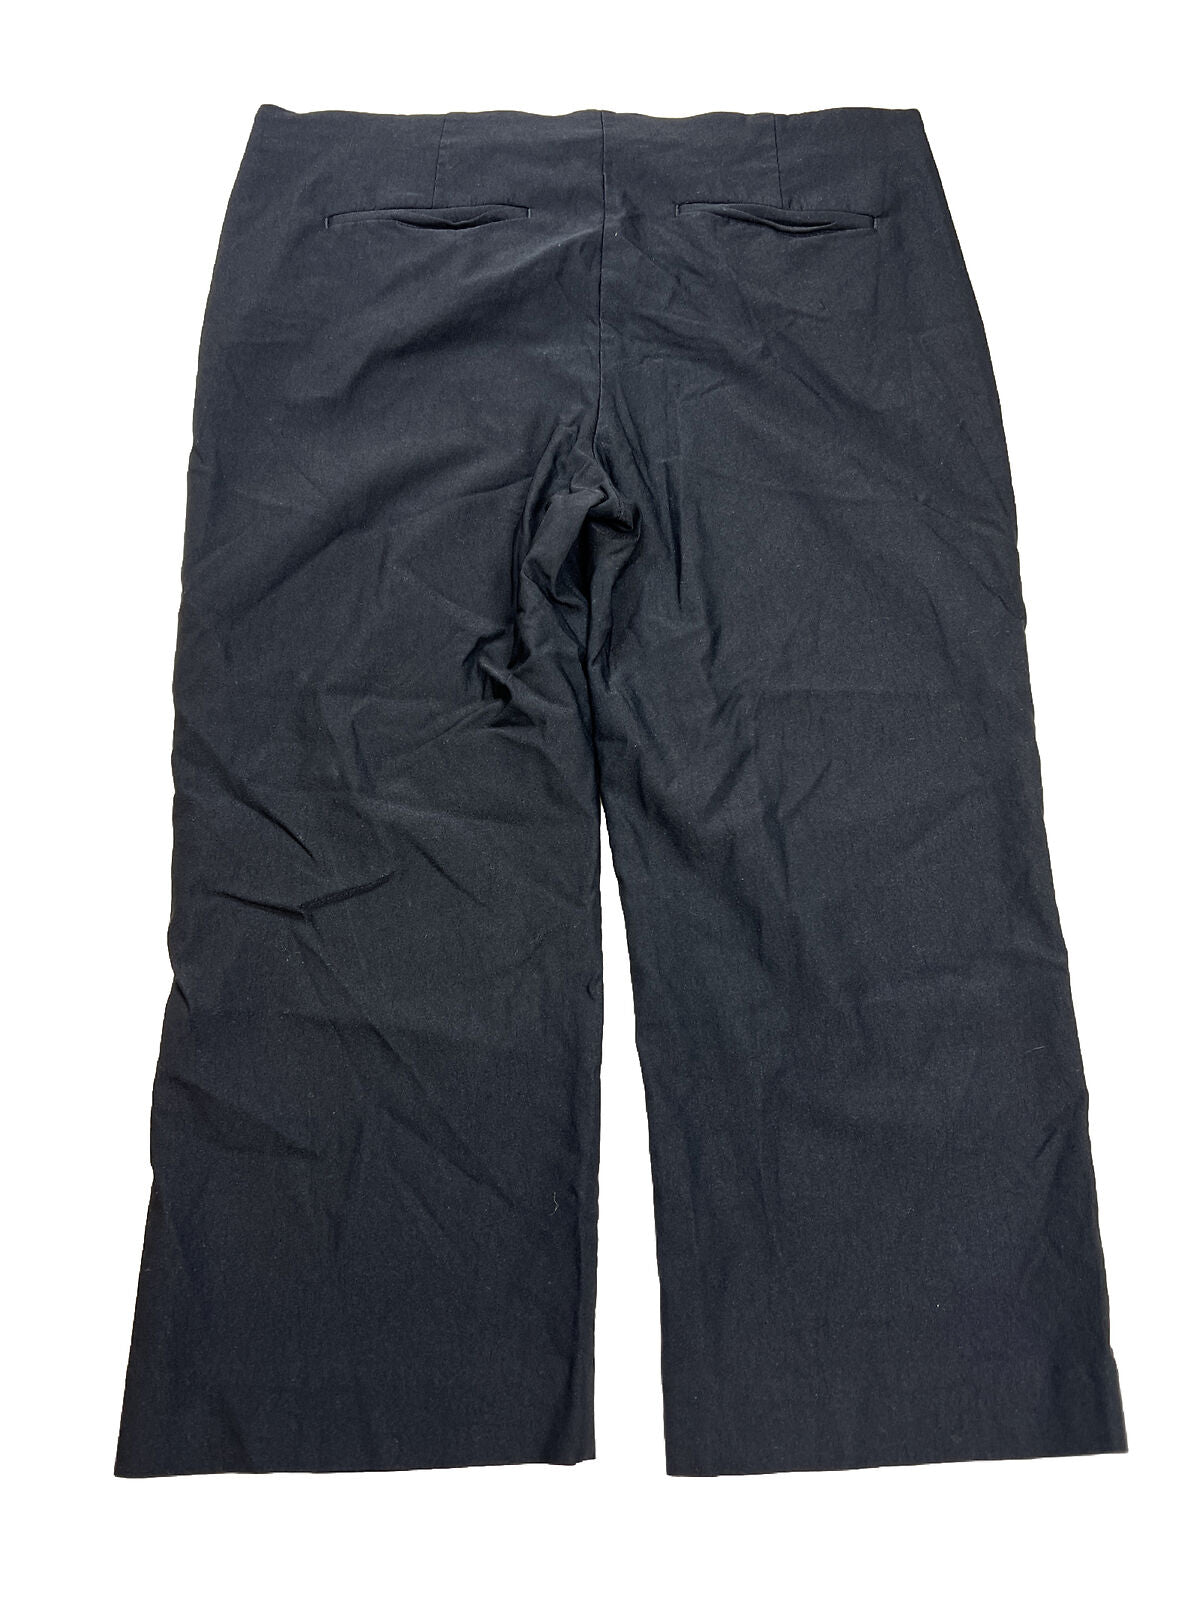 Chico's Pantalones cortos elásticos negros para mujer - 3/US 16